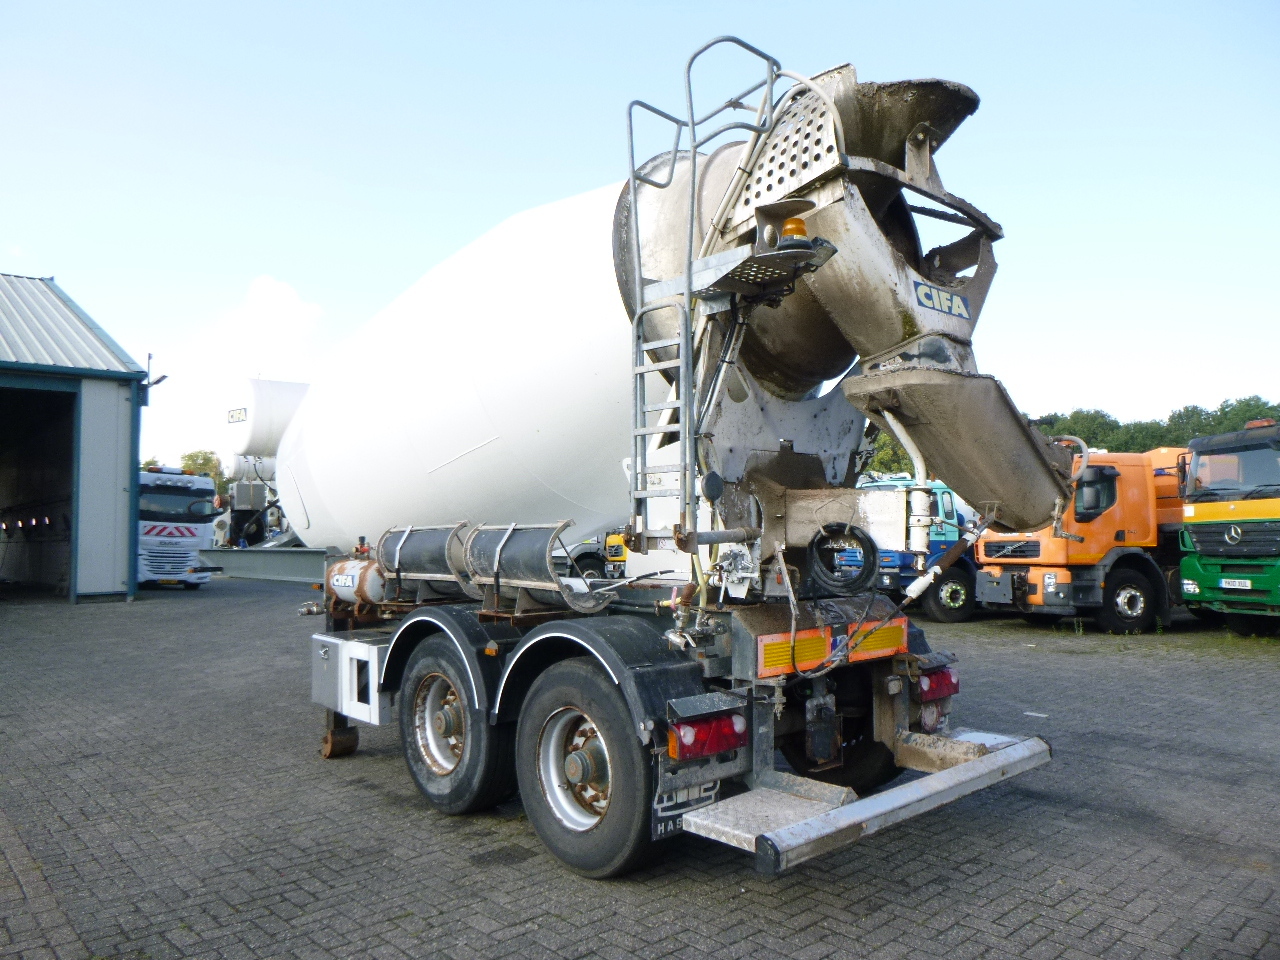 Mol Cifa mixer trailer 12 m3 - Concrete mixer truck: picture 2